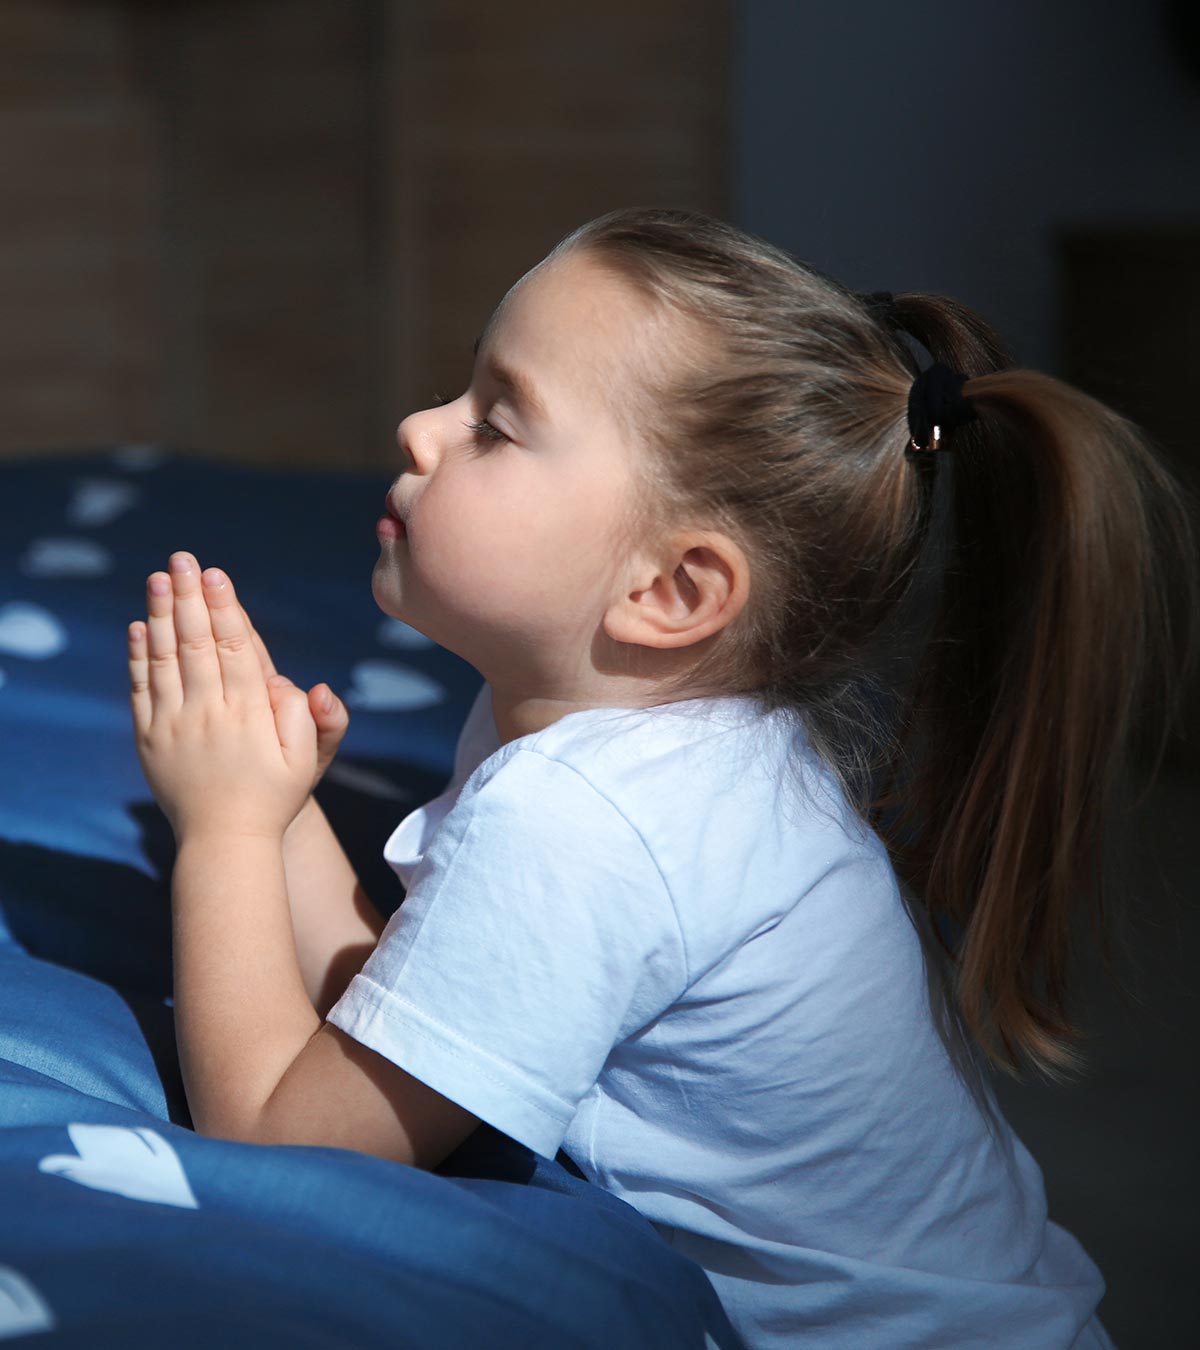 Child Doing Bedtime Prayer